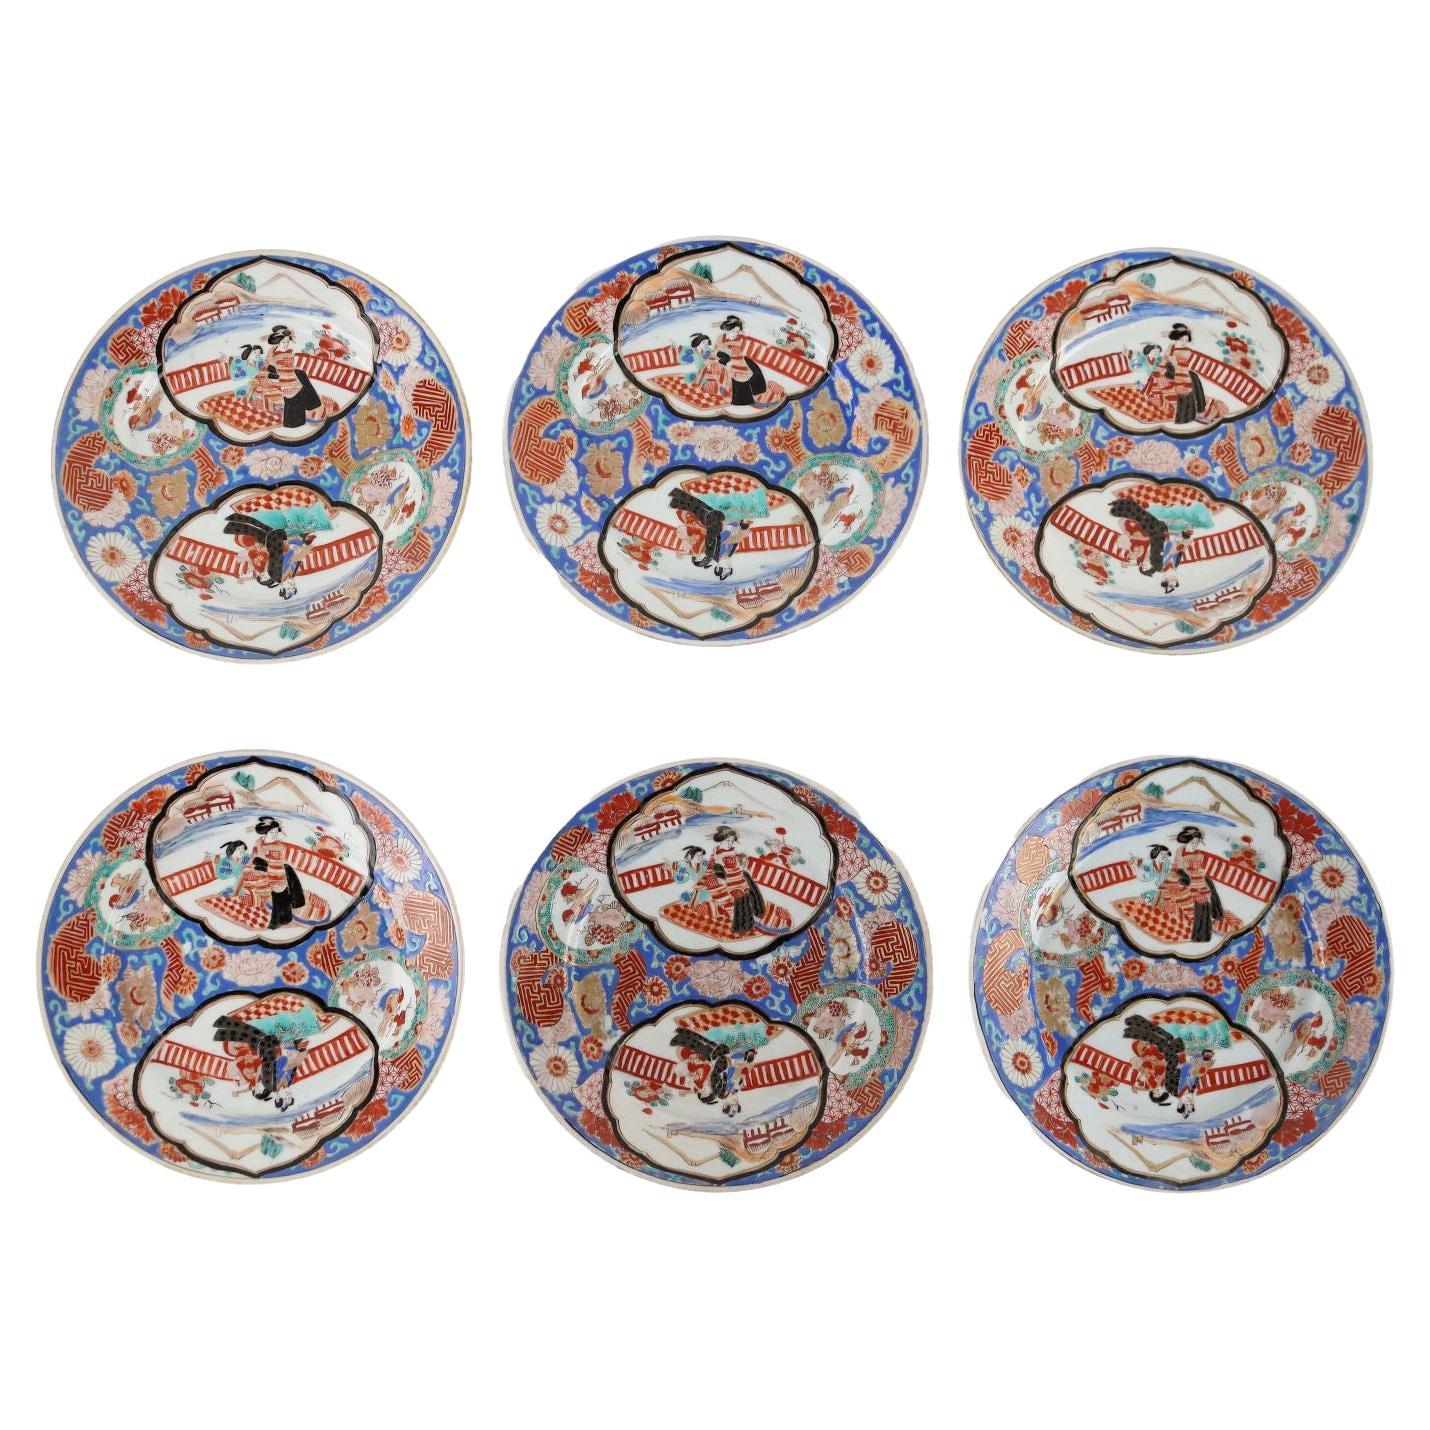 Groupe de 6 assiettes en porcelaine du Japon 19e-20e siècle, Japon, époque Meiji